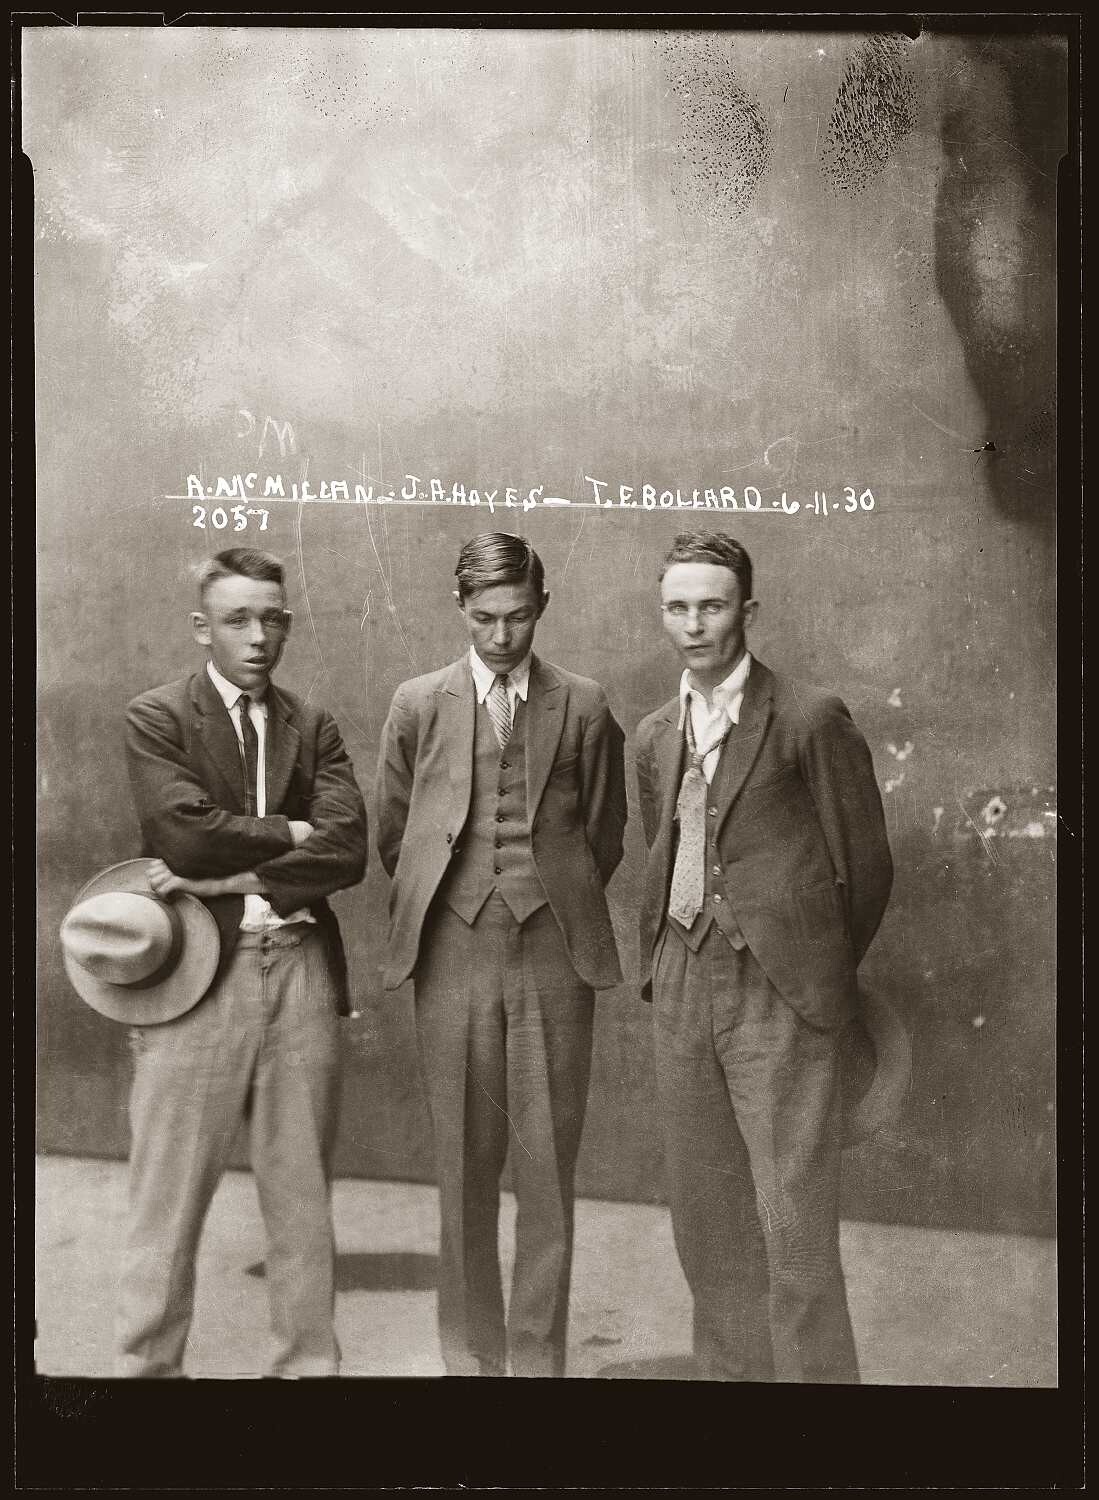 Члены бритвенной банды - Эдди Макмиллан, Джон Фредерик Чау Хейс, Томас Эсмонд Боллард, 1930 год. Архив судебной фотографии полиции Нового Южного Уэльса